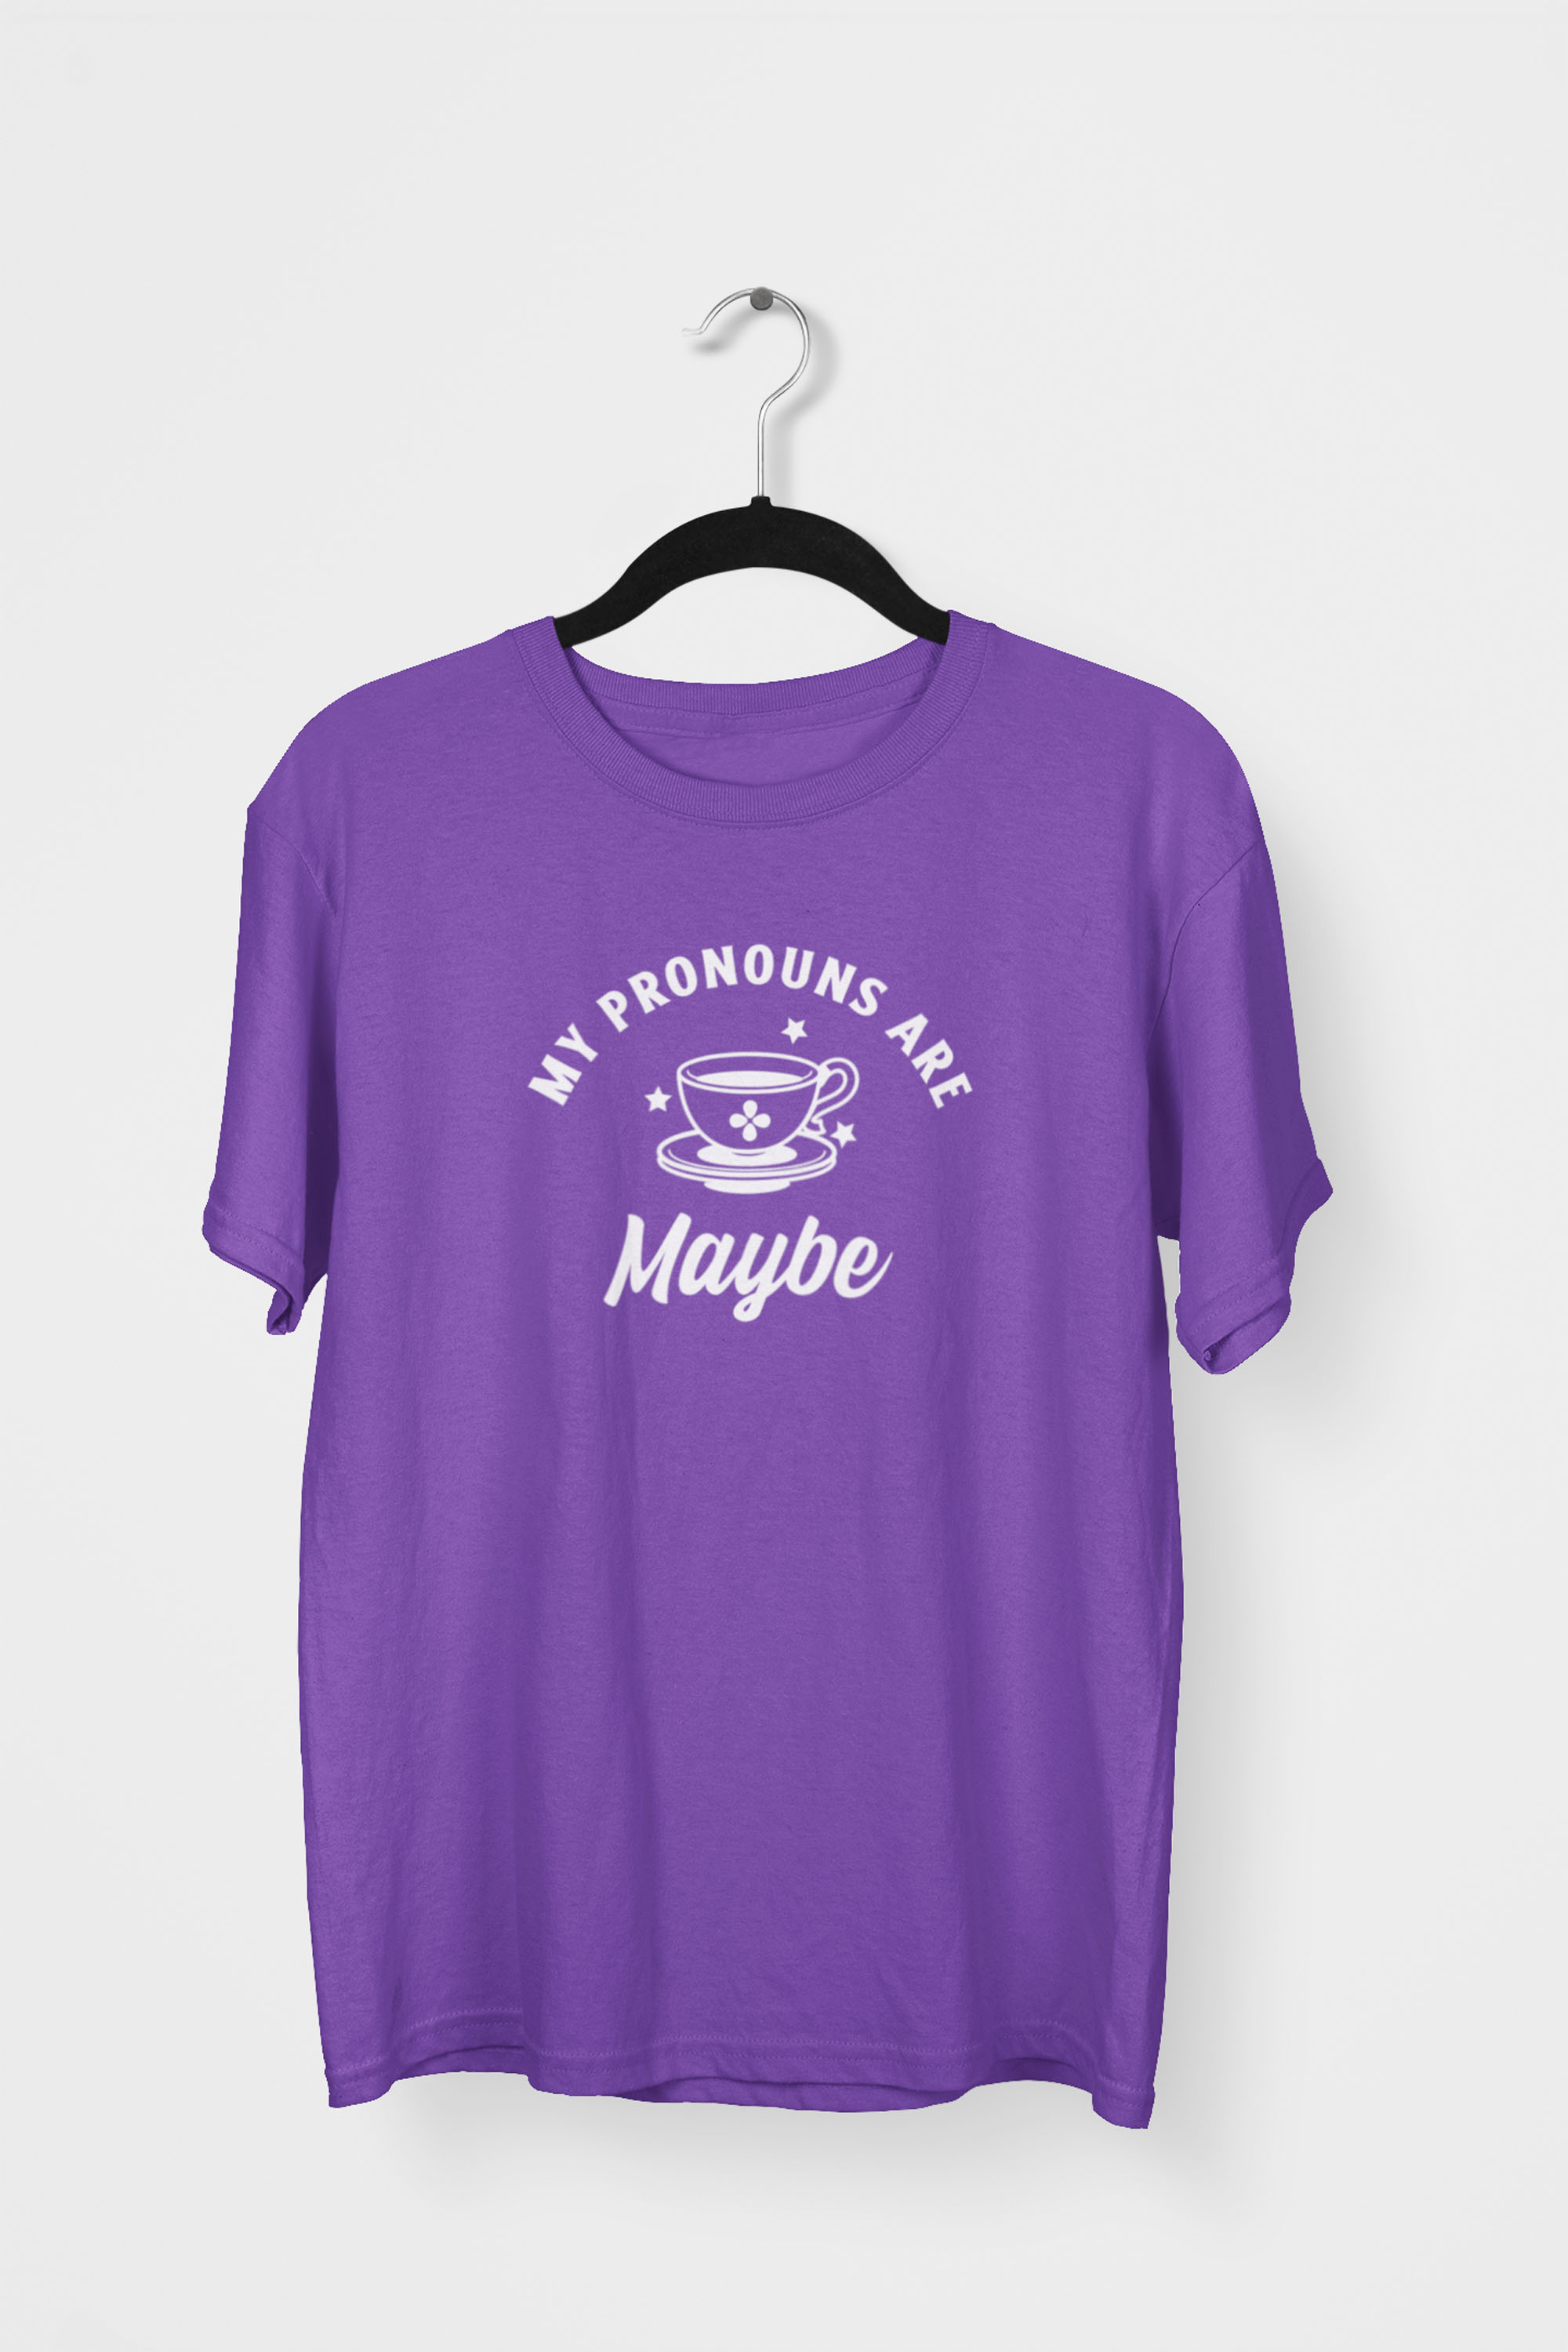 My Pronouns are Maybe T-shirt - Purple